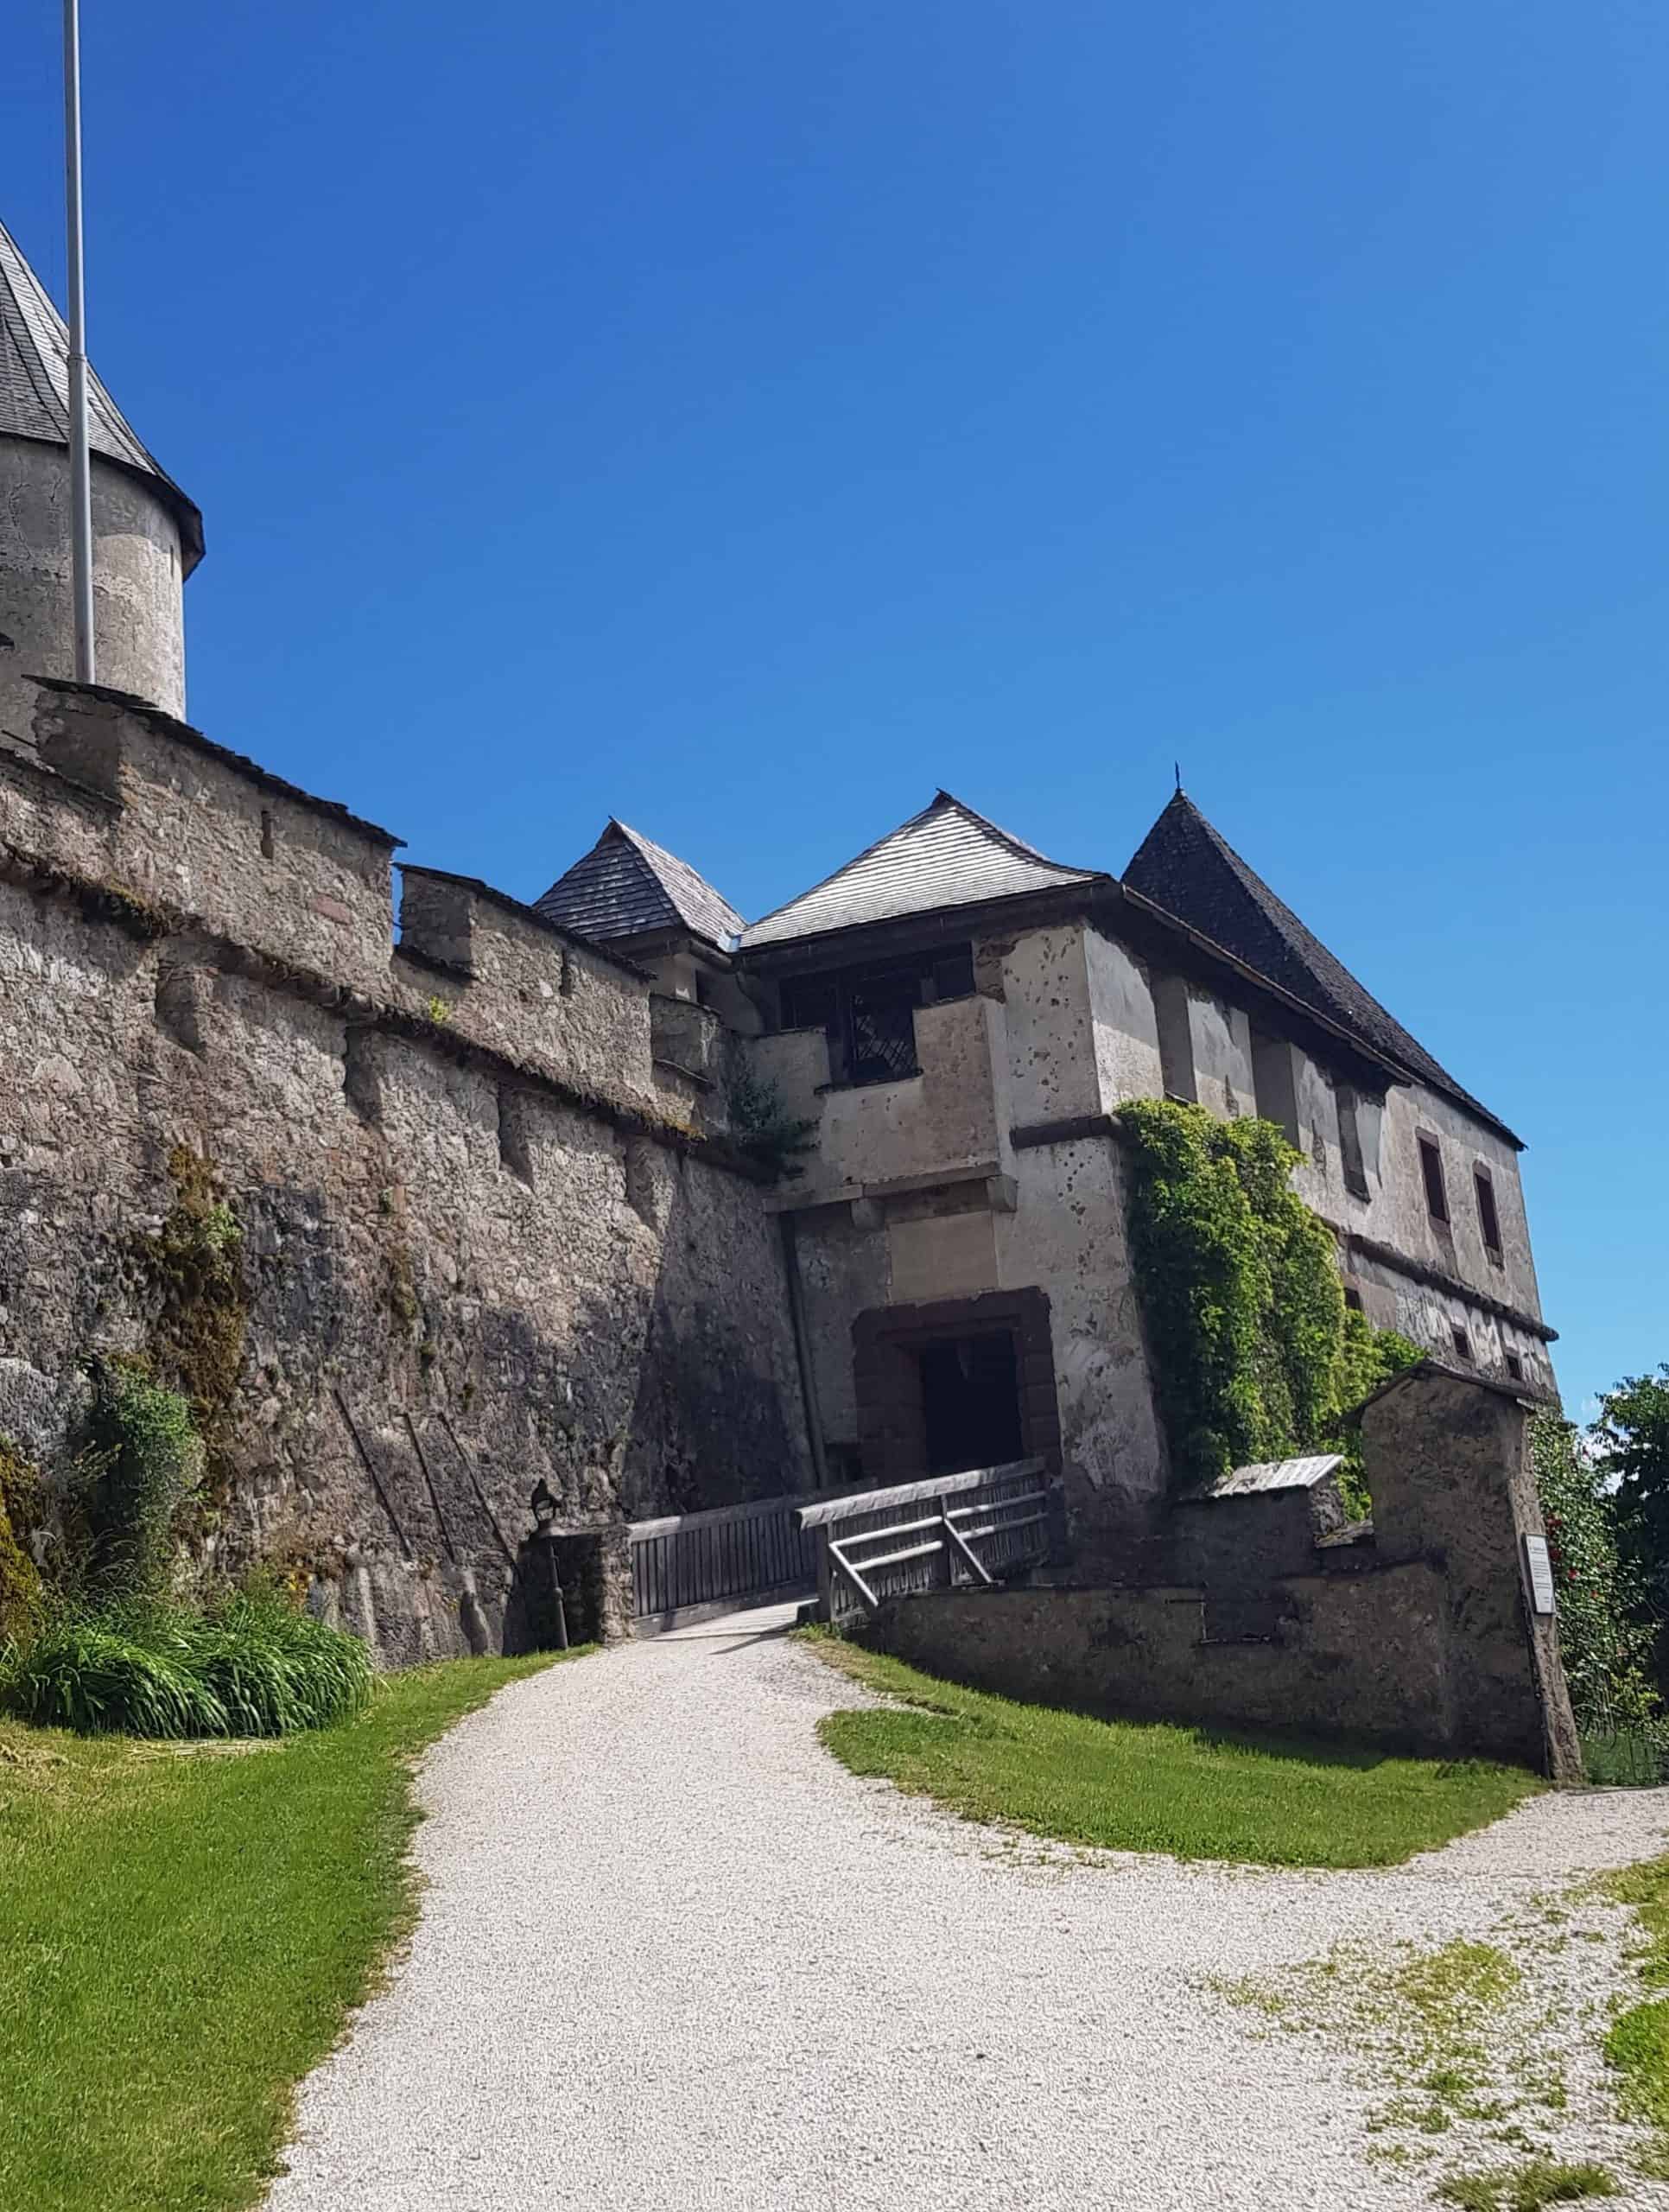 Kulmertor auf Burg Hochosterwitz - mittelalterliche Burgtore zur Verteidigung. Sehenswürdigkeit in Kärnten, Nähe St. Veit